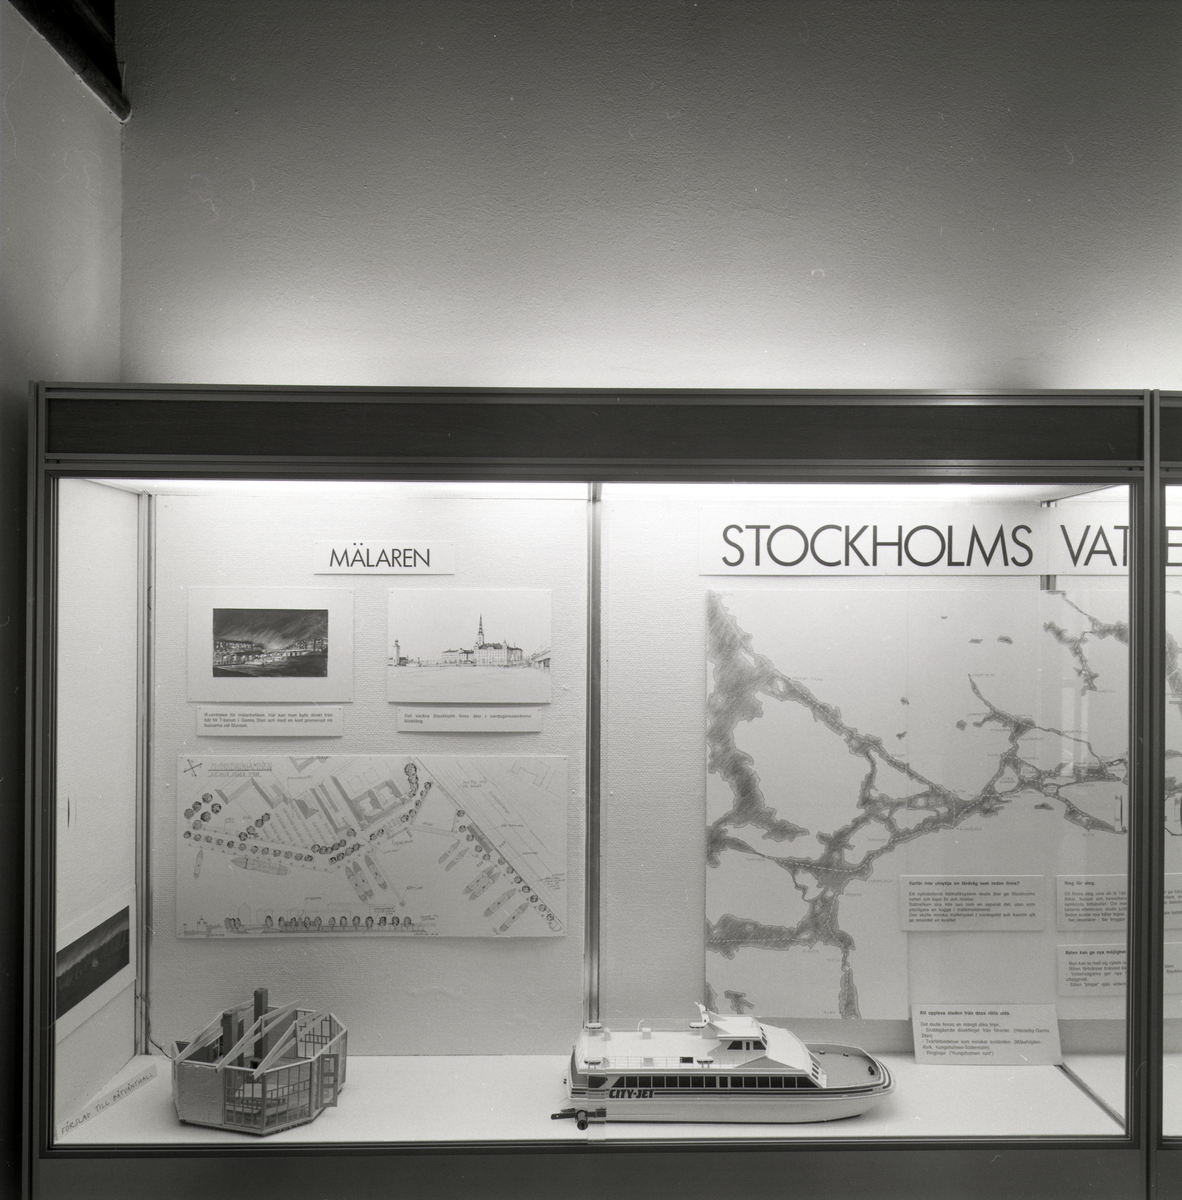 Utställning i trappmonter om Stockholms vattenvägar. Del av utställningen som visar trafikplanering, förslag till en båtvänthall samt en modell av CITY JET.